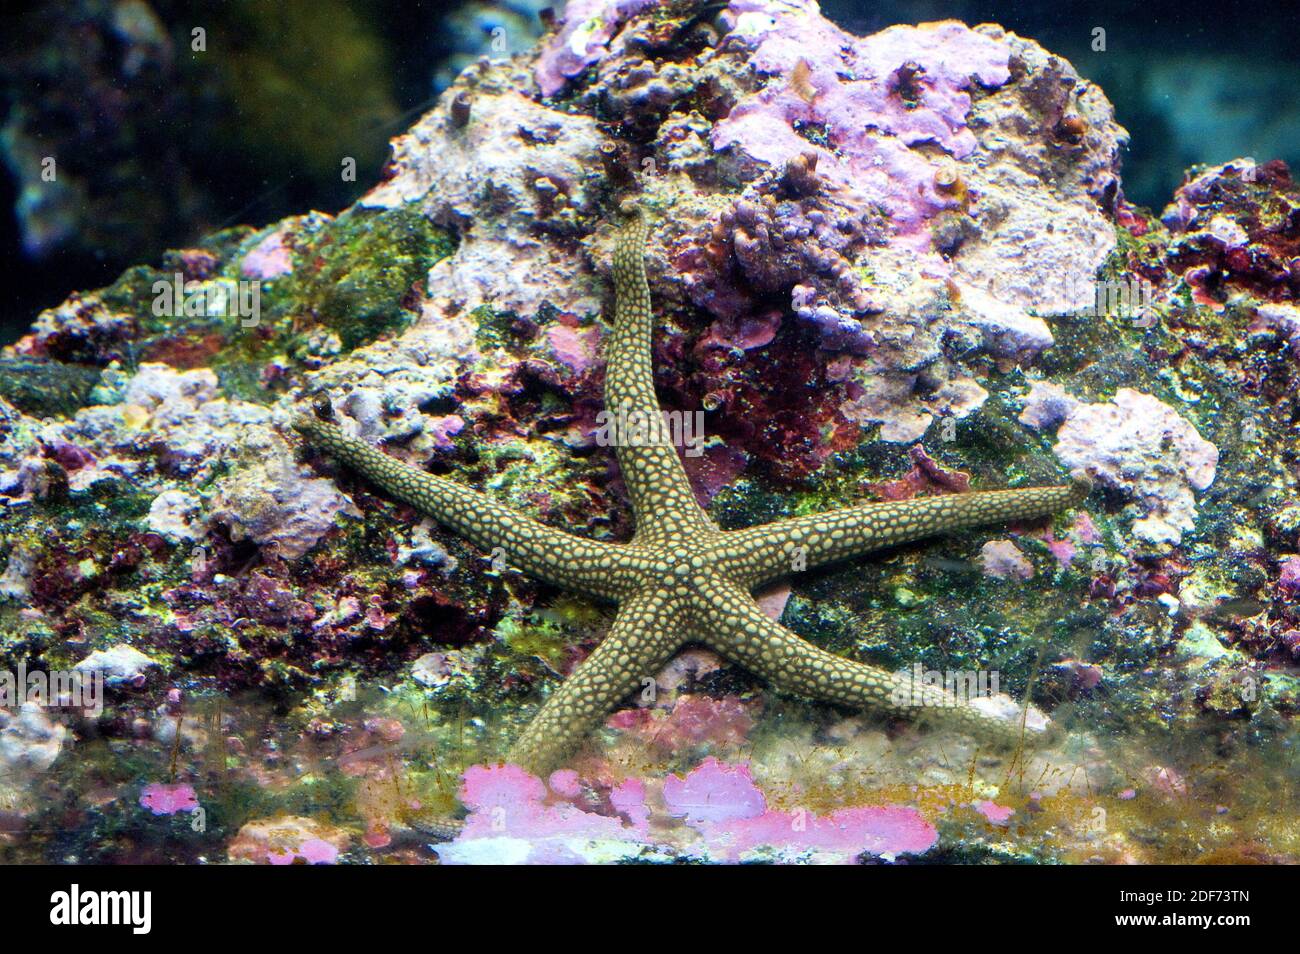 Nardoa novaecaledoniae è una stella marina originaria delle barriere coralline tropicali dell'Oceano Pacifico. Foto Stock